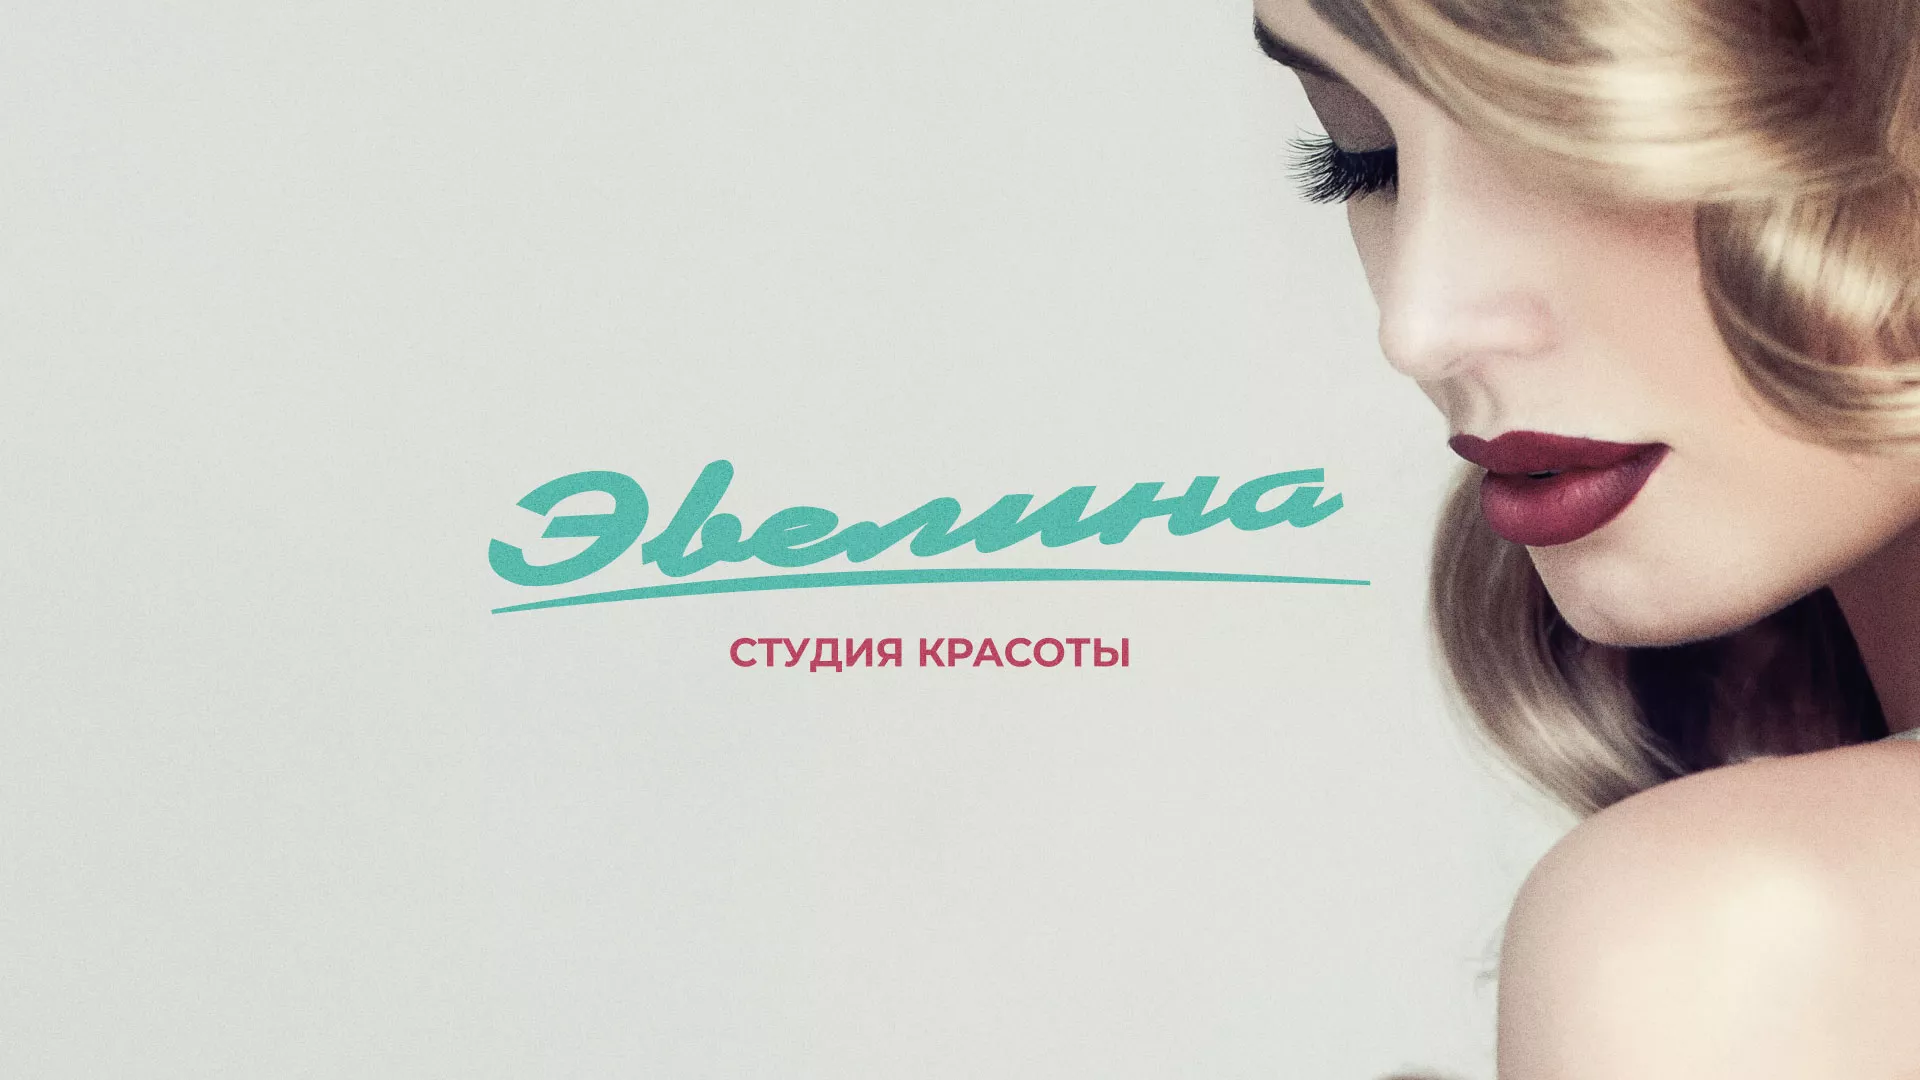 Разработка сайта для салона красоты «Эвелина» в Свердловском